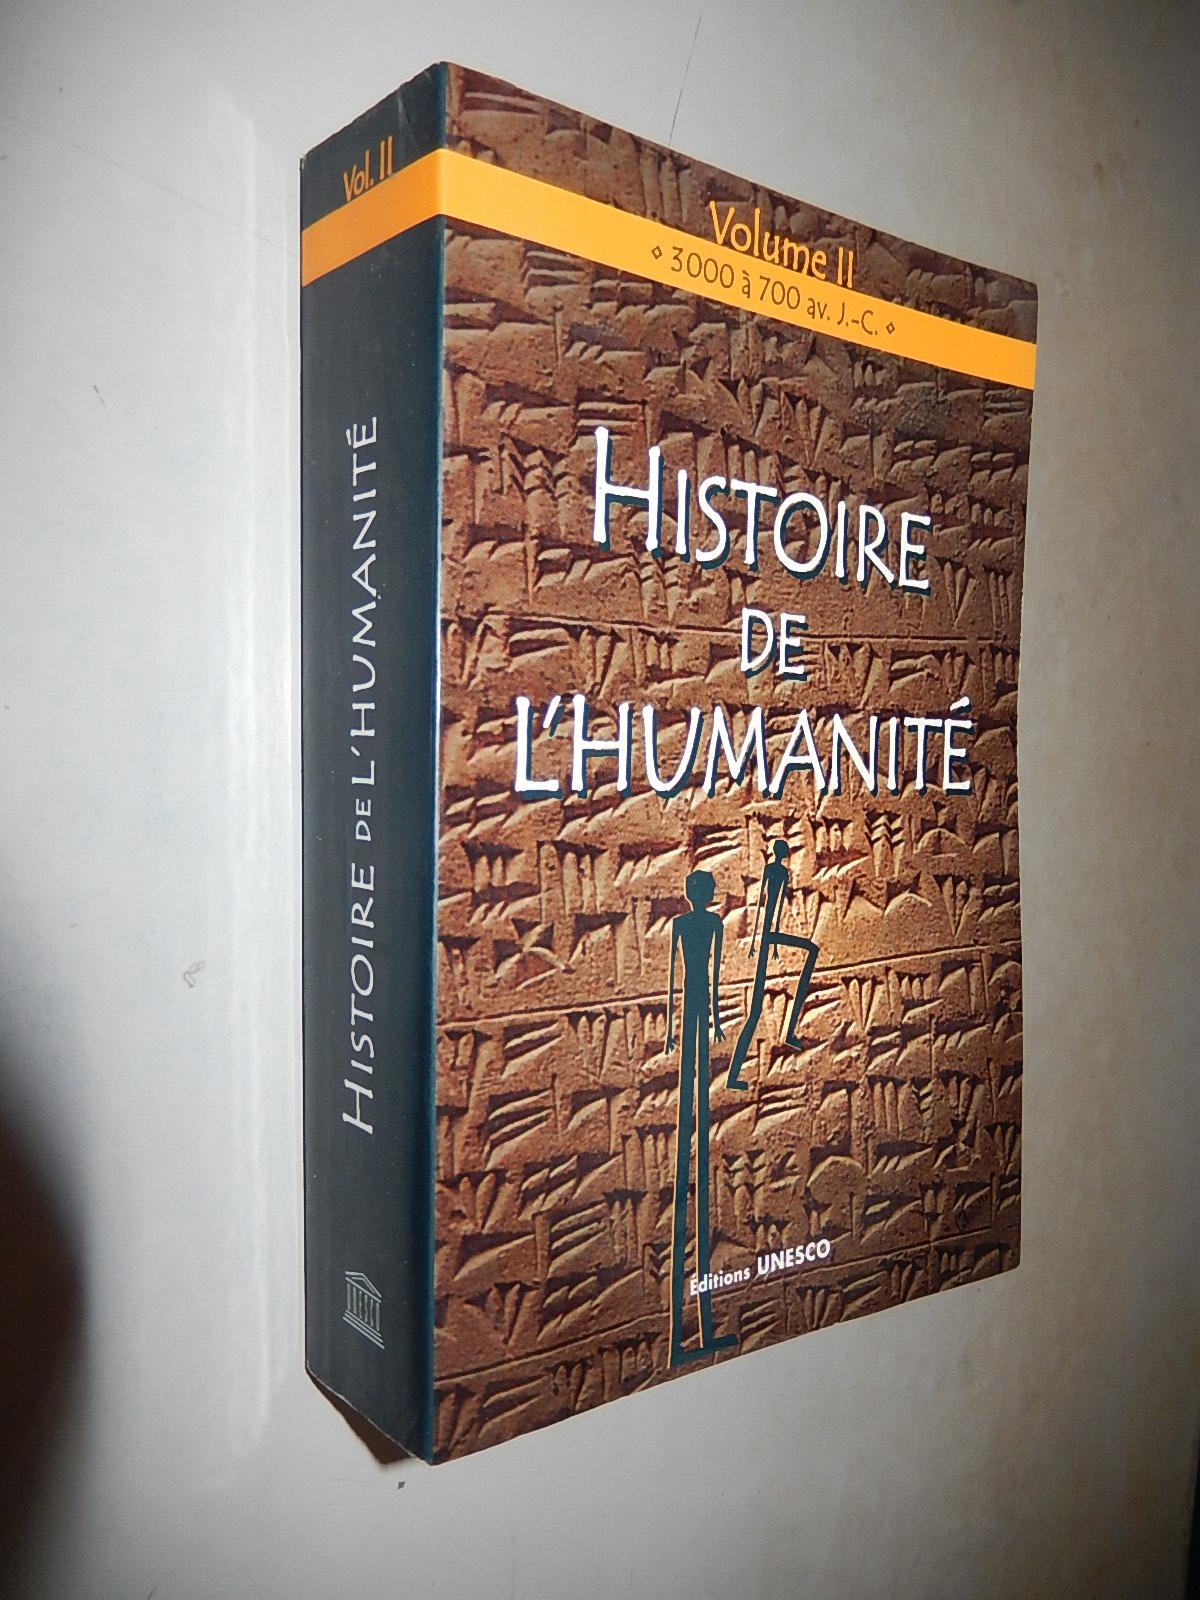 Histoire de Lhumanité Volume 2: 3000 à 700 avant j-c 人类史 第二卷 公元前3000至700年 法文原版 插图版